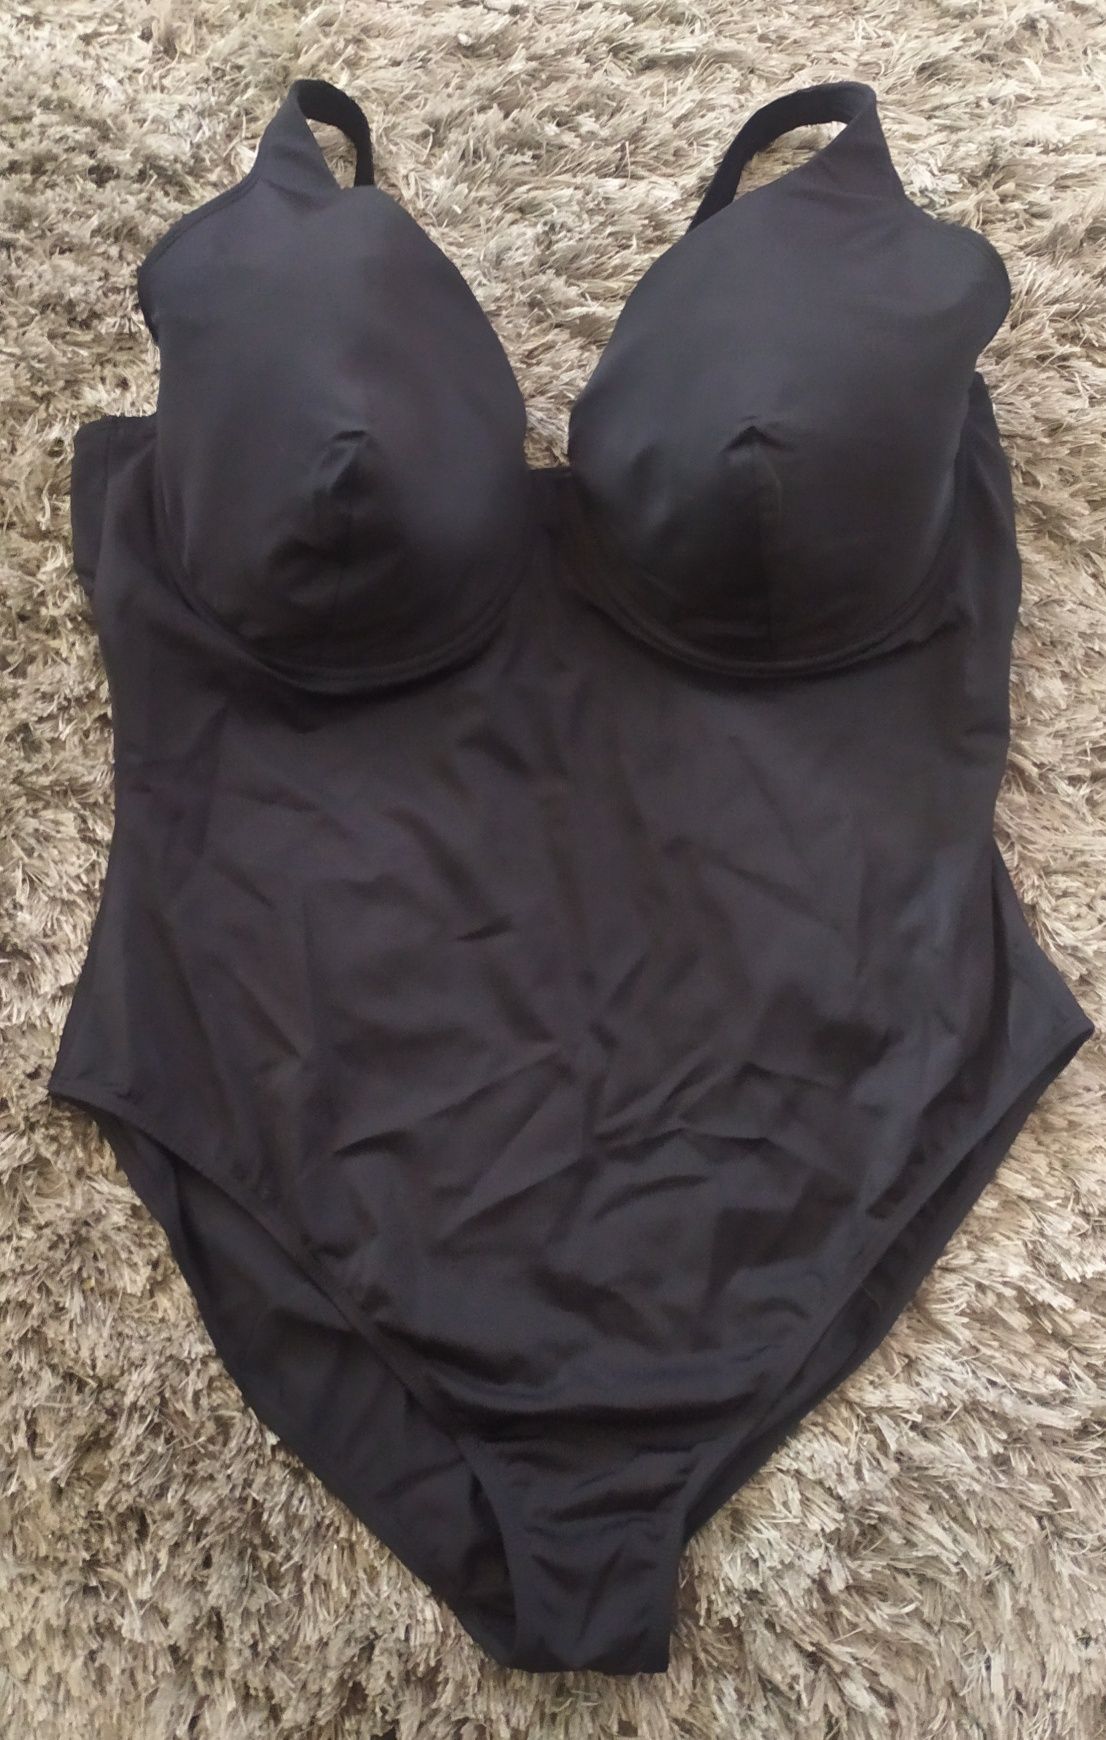 NOWY modelujący strój kąpielowy 1 częściowy r. 50 ( 100 E ) czarny Bpc